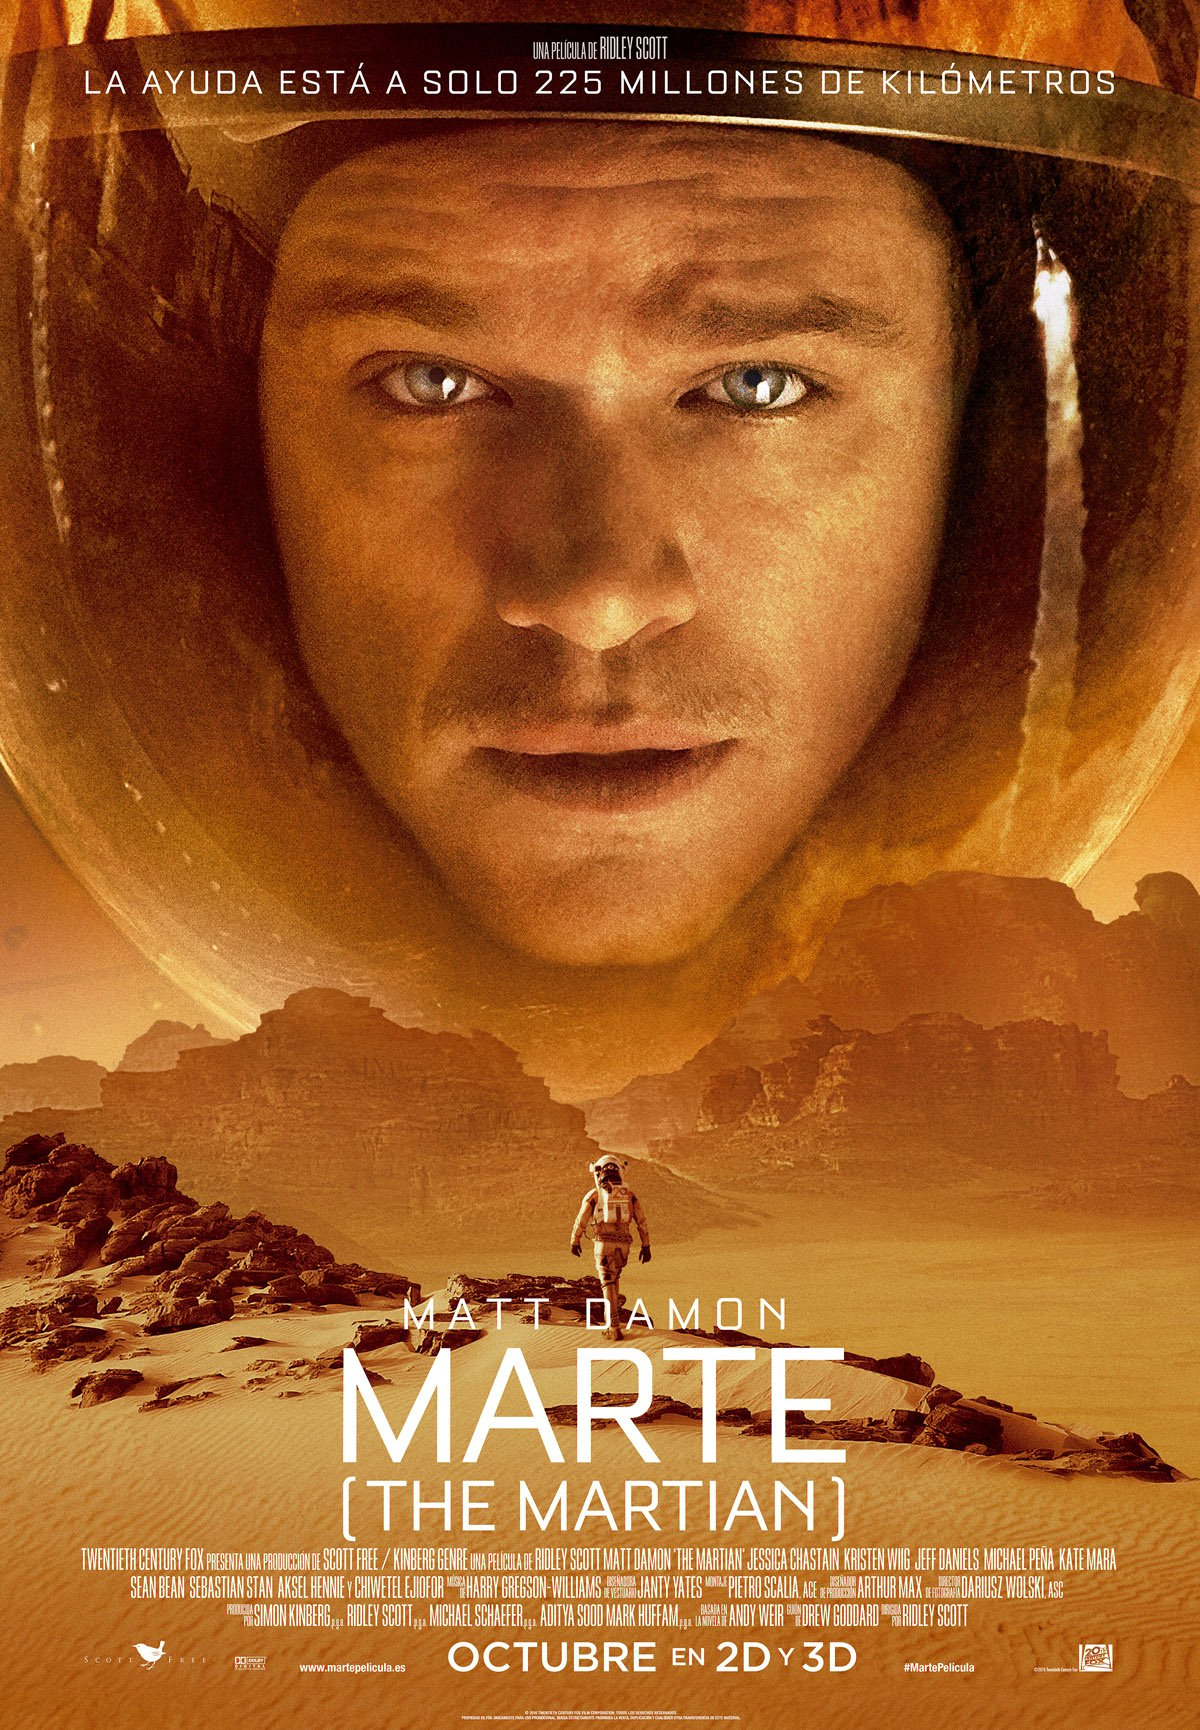 Resultado de imagen de Marte de Ridley Scott